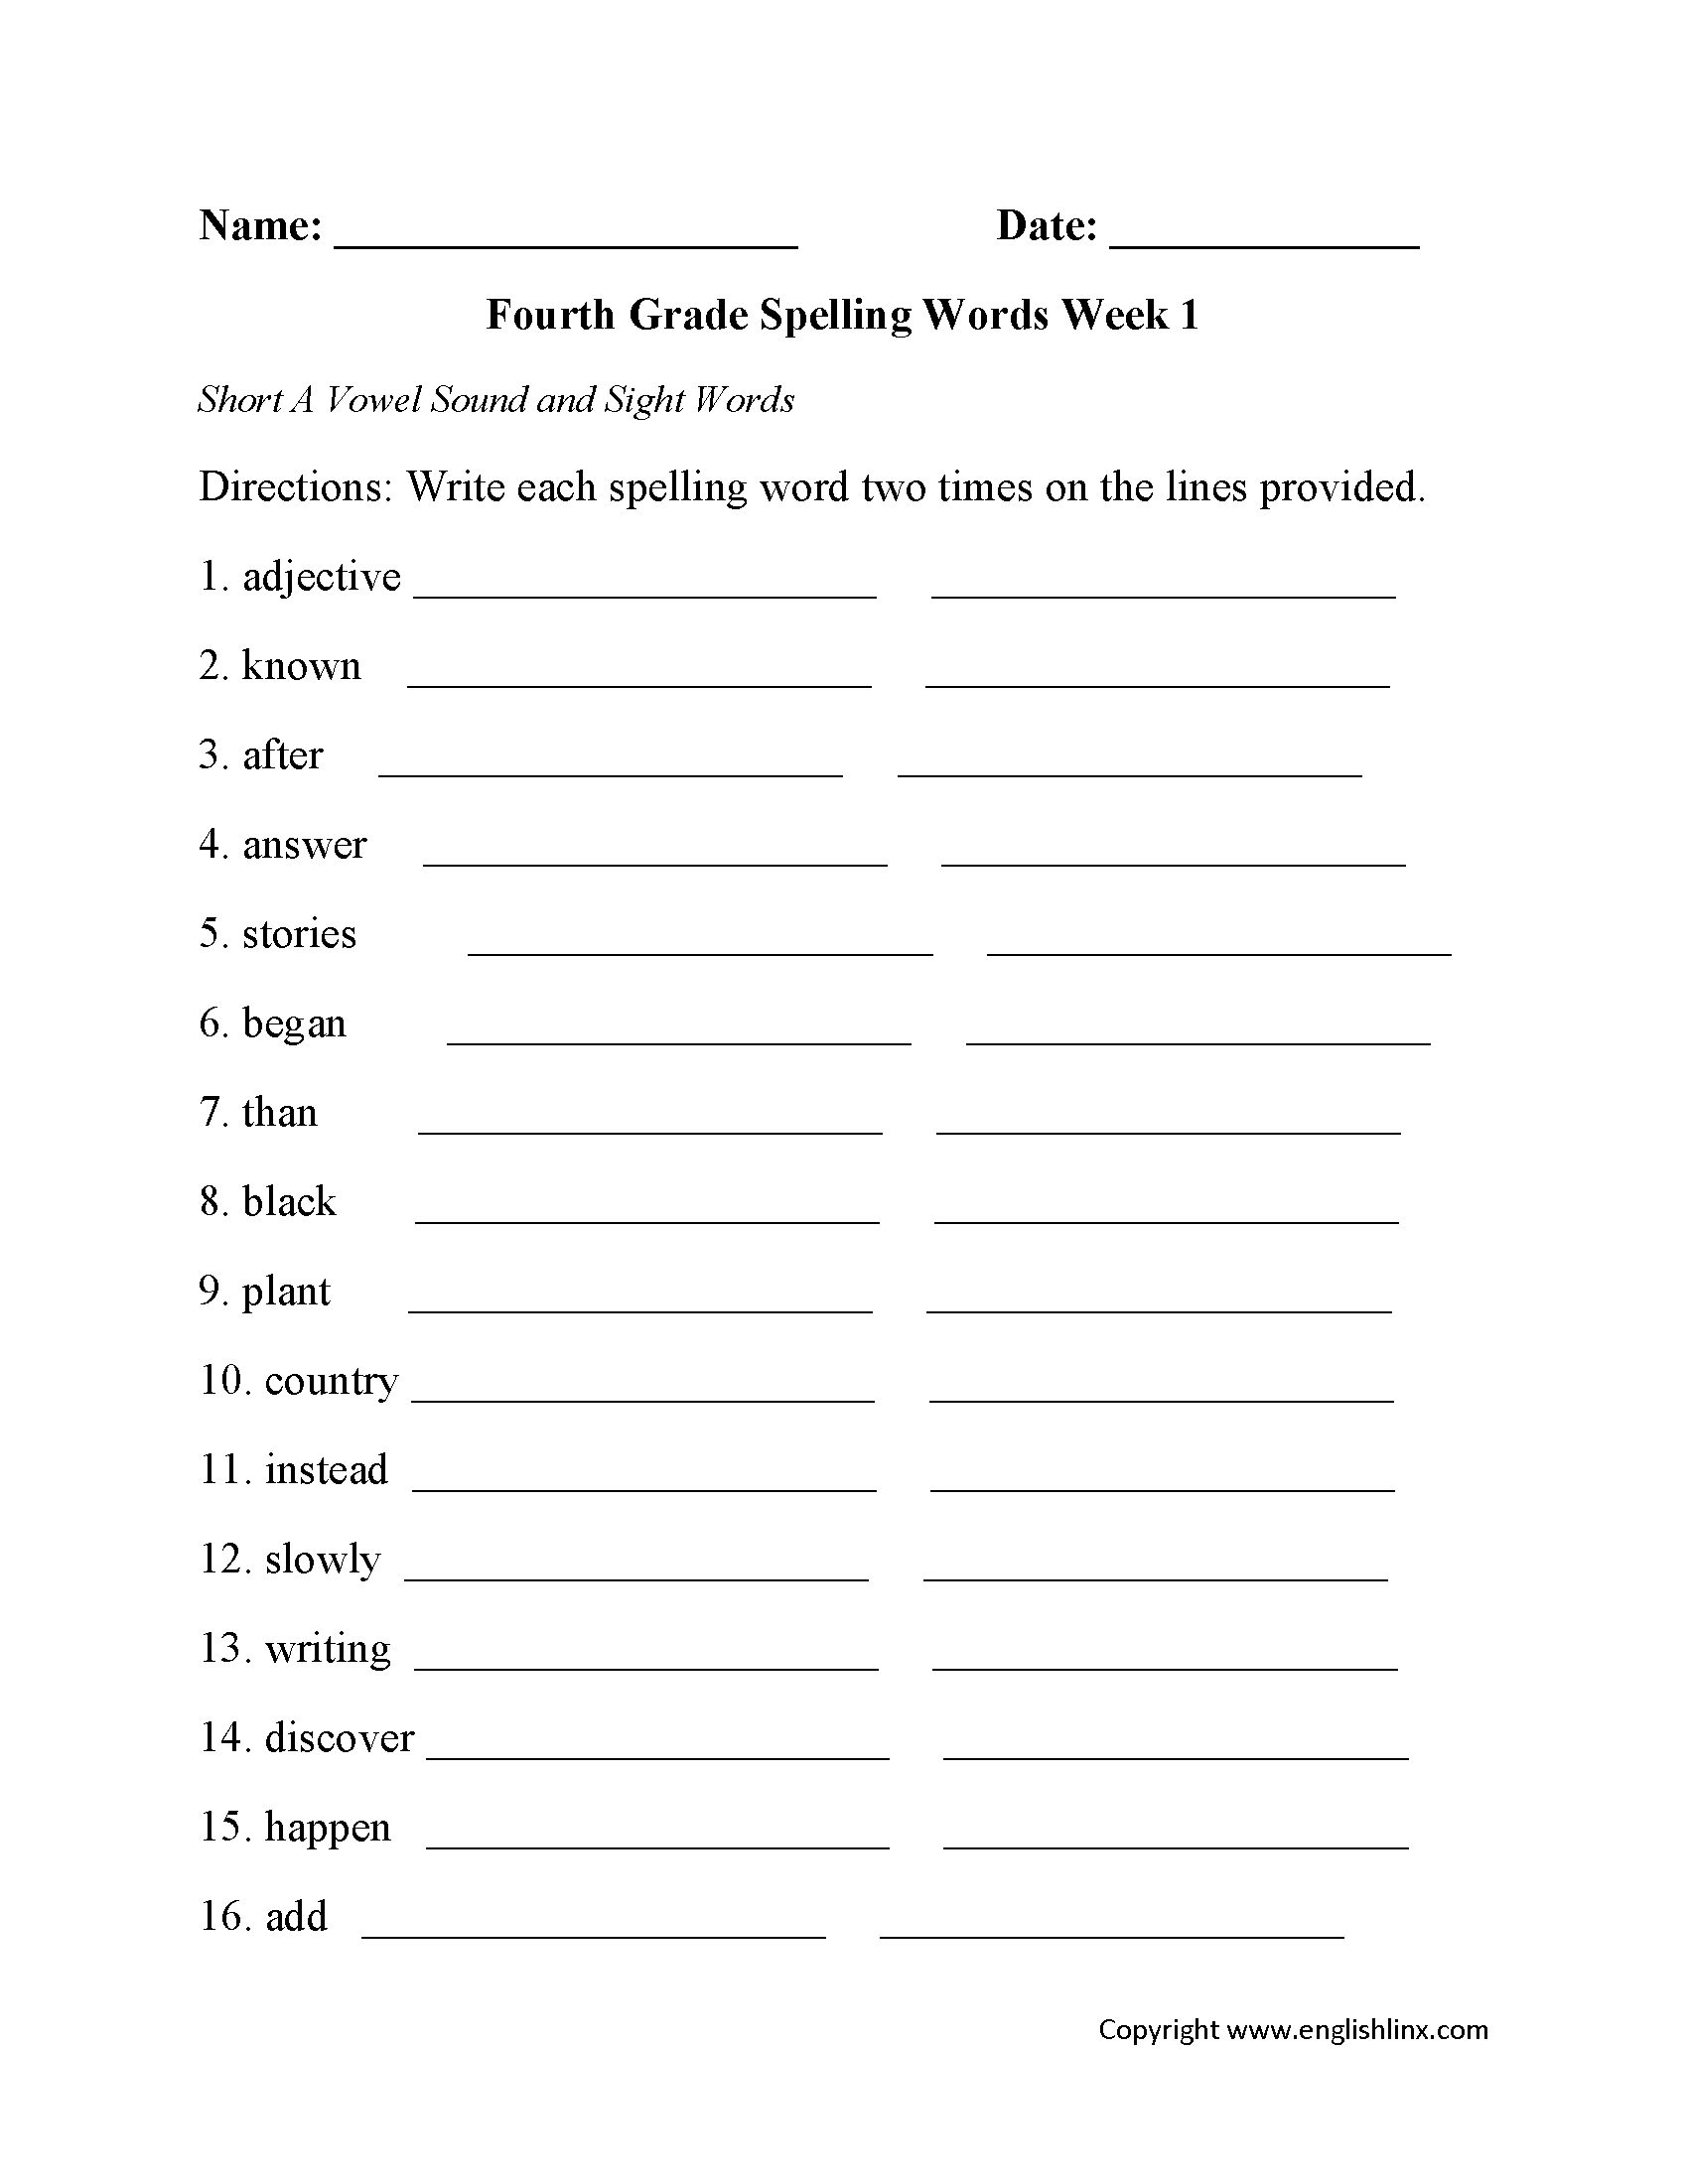 Spelling Worksheets | Fourth Grade Spelling Worksheets - Free Printable Spelling Practice Worksheets